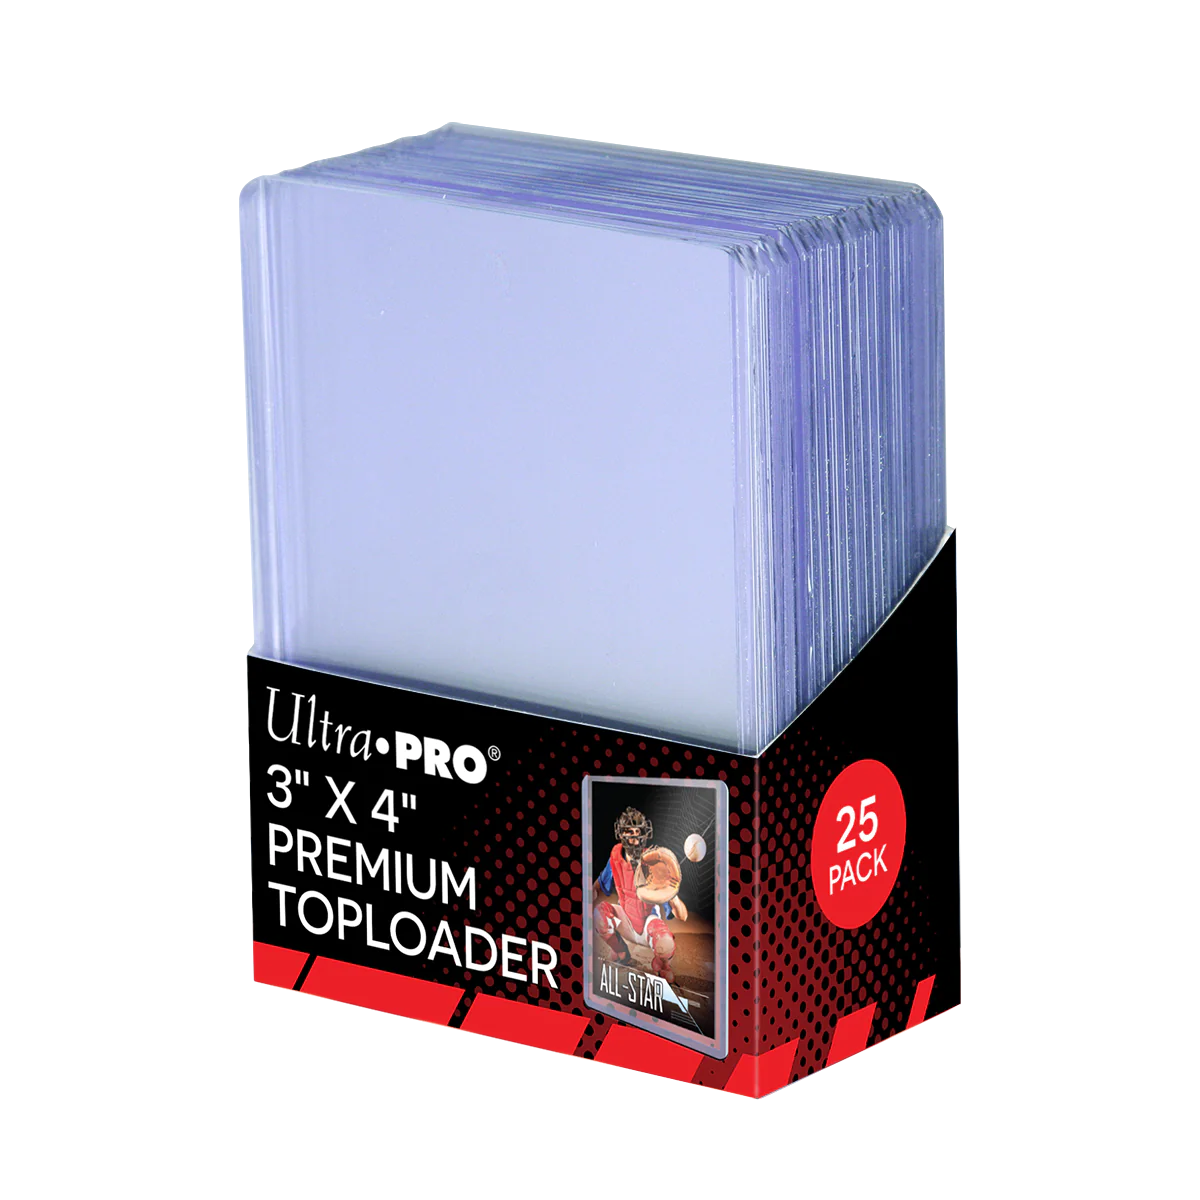 Ultra Pro 3" x 4" Premium Toploader - Ultra-clear - (25 pack)